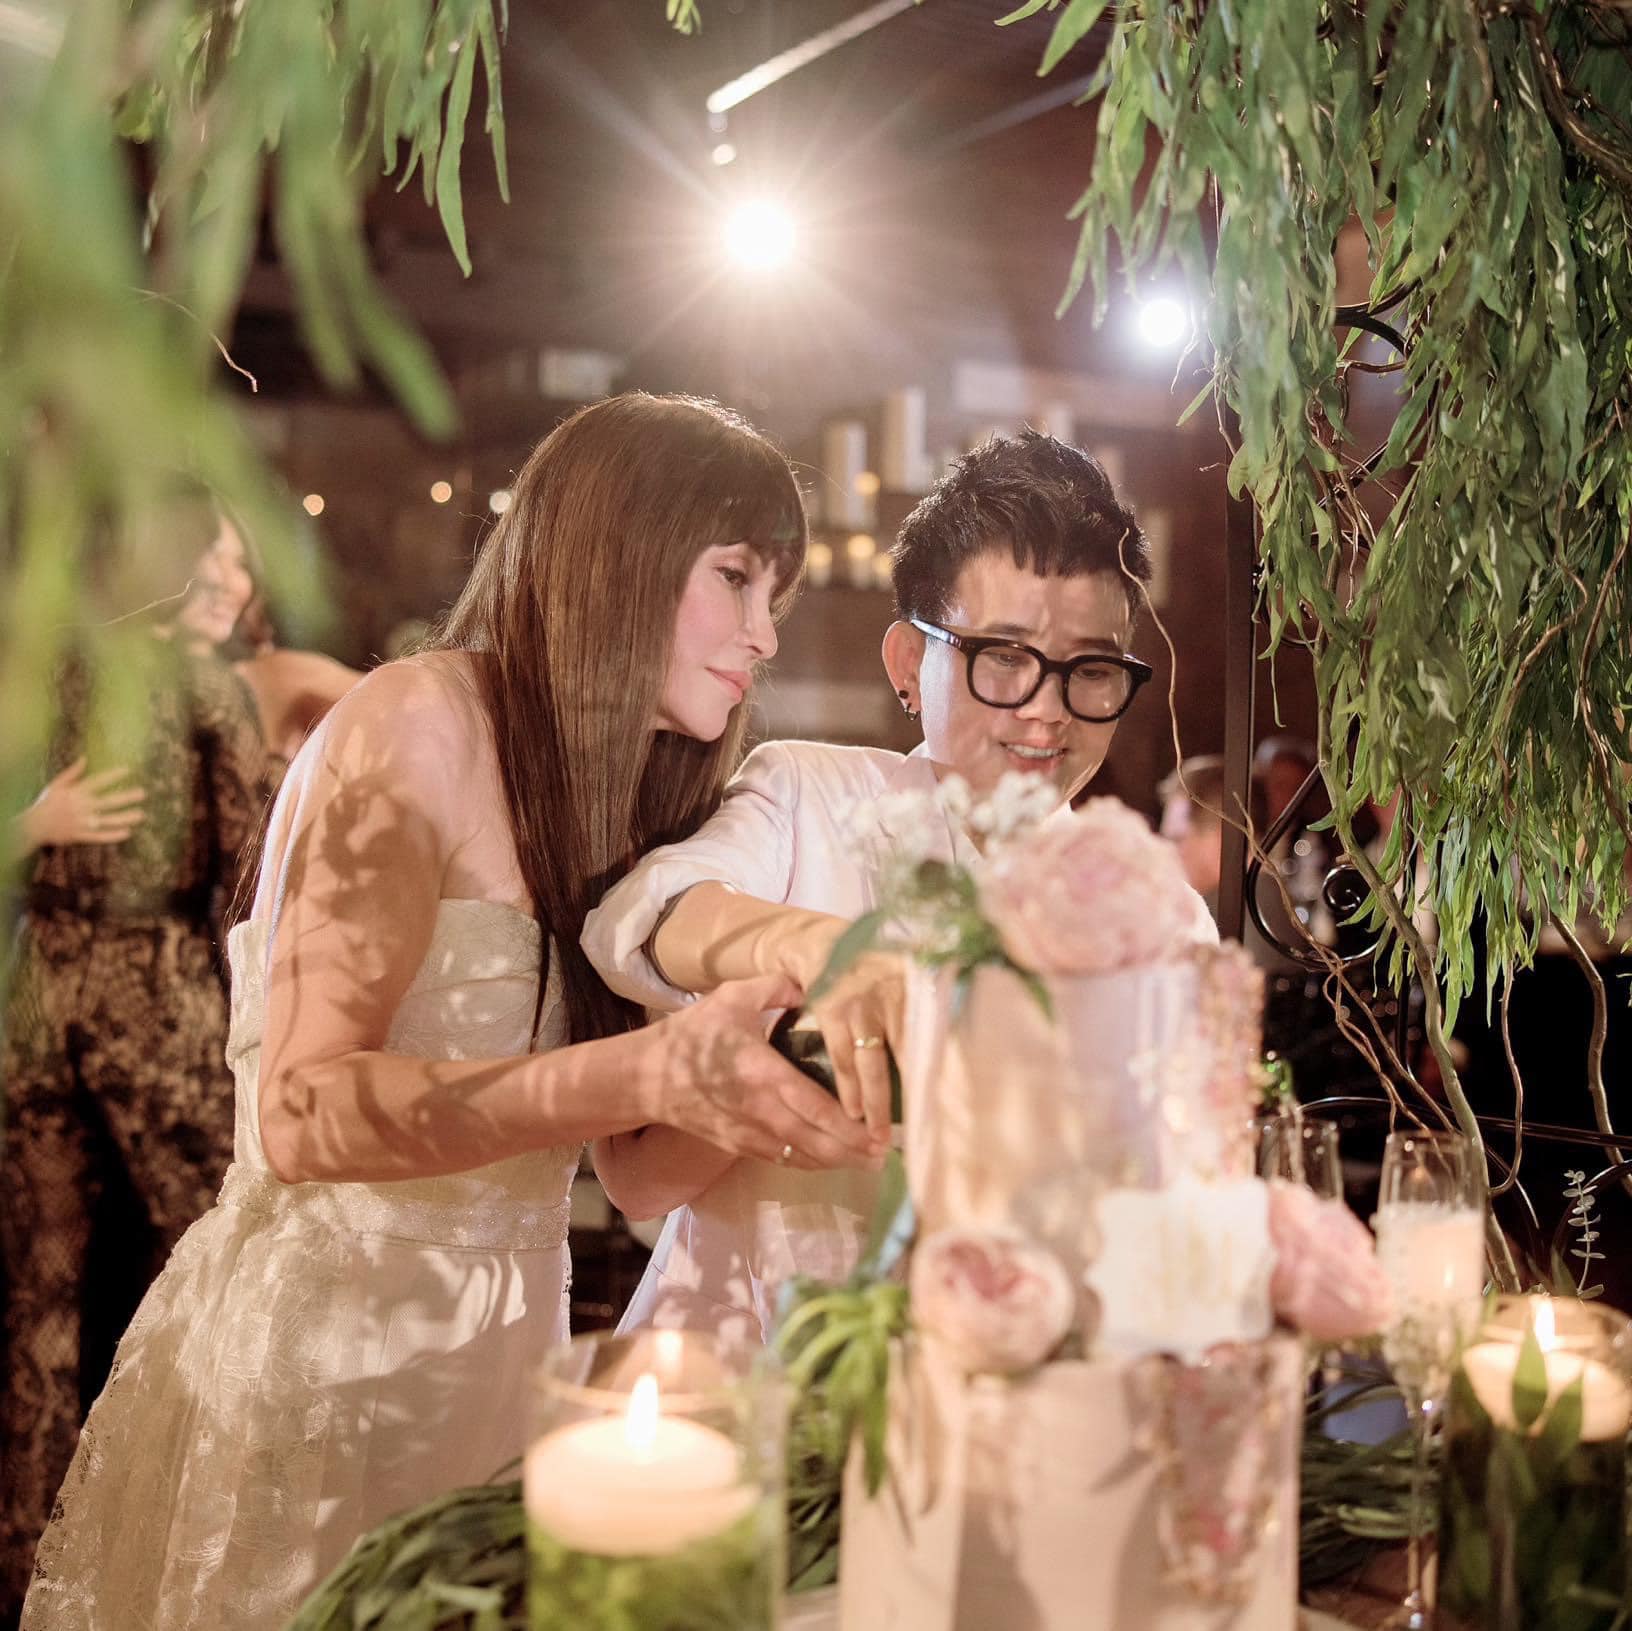 Đám cưới của đôi uyên ương Thanh Hà - Phương Uyên là một sự kiện đáng chú ý cho làng giải trí Việt Nam. Những hình ảnh ngọt ngào, tình cảm của đôi vợ chồng trẻ sẽ khiến bạn có thêm niềm yêu đời và hi vọng vào tình yêu đích thực.